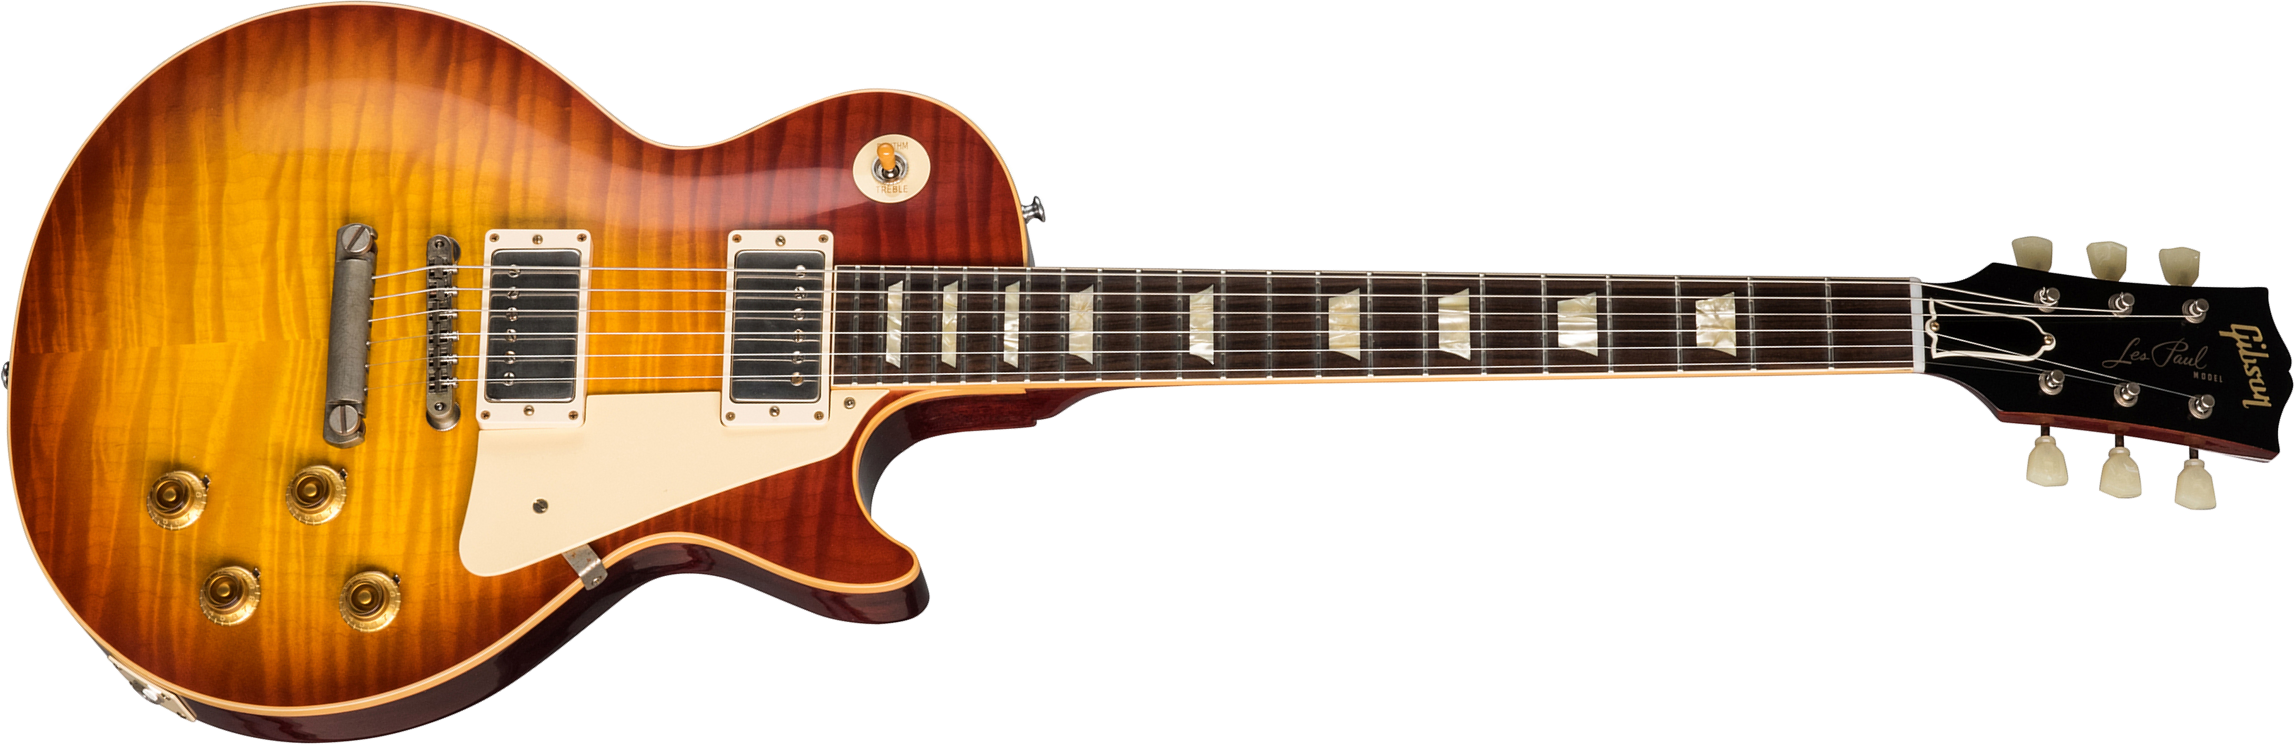 Gibson Custom Shop Les Paul Standard 1959 60th Anniversary Bolivian Rw - Vos Sunrise Teaburst - Guitare Électrique Single Cut - Main picture